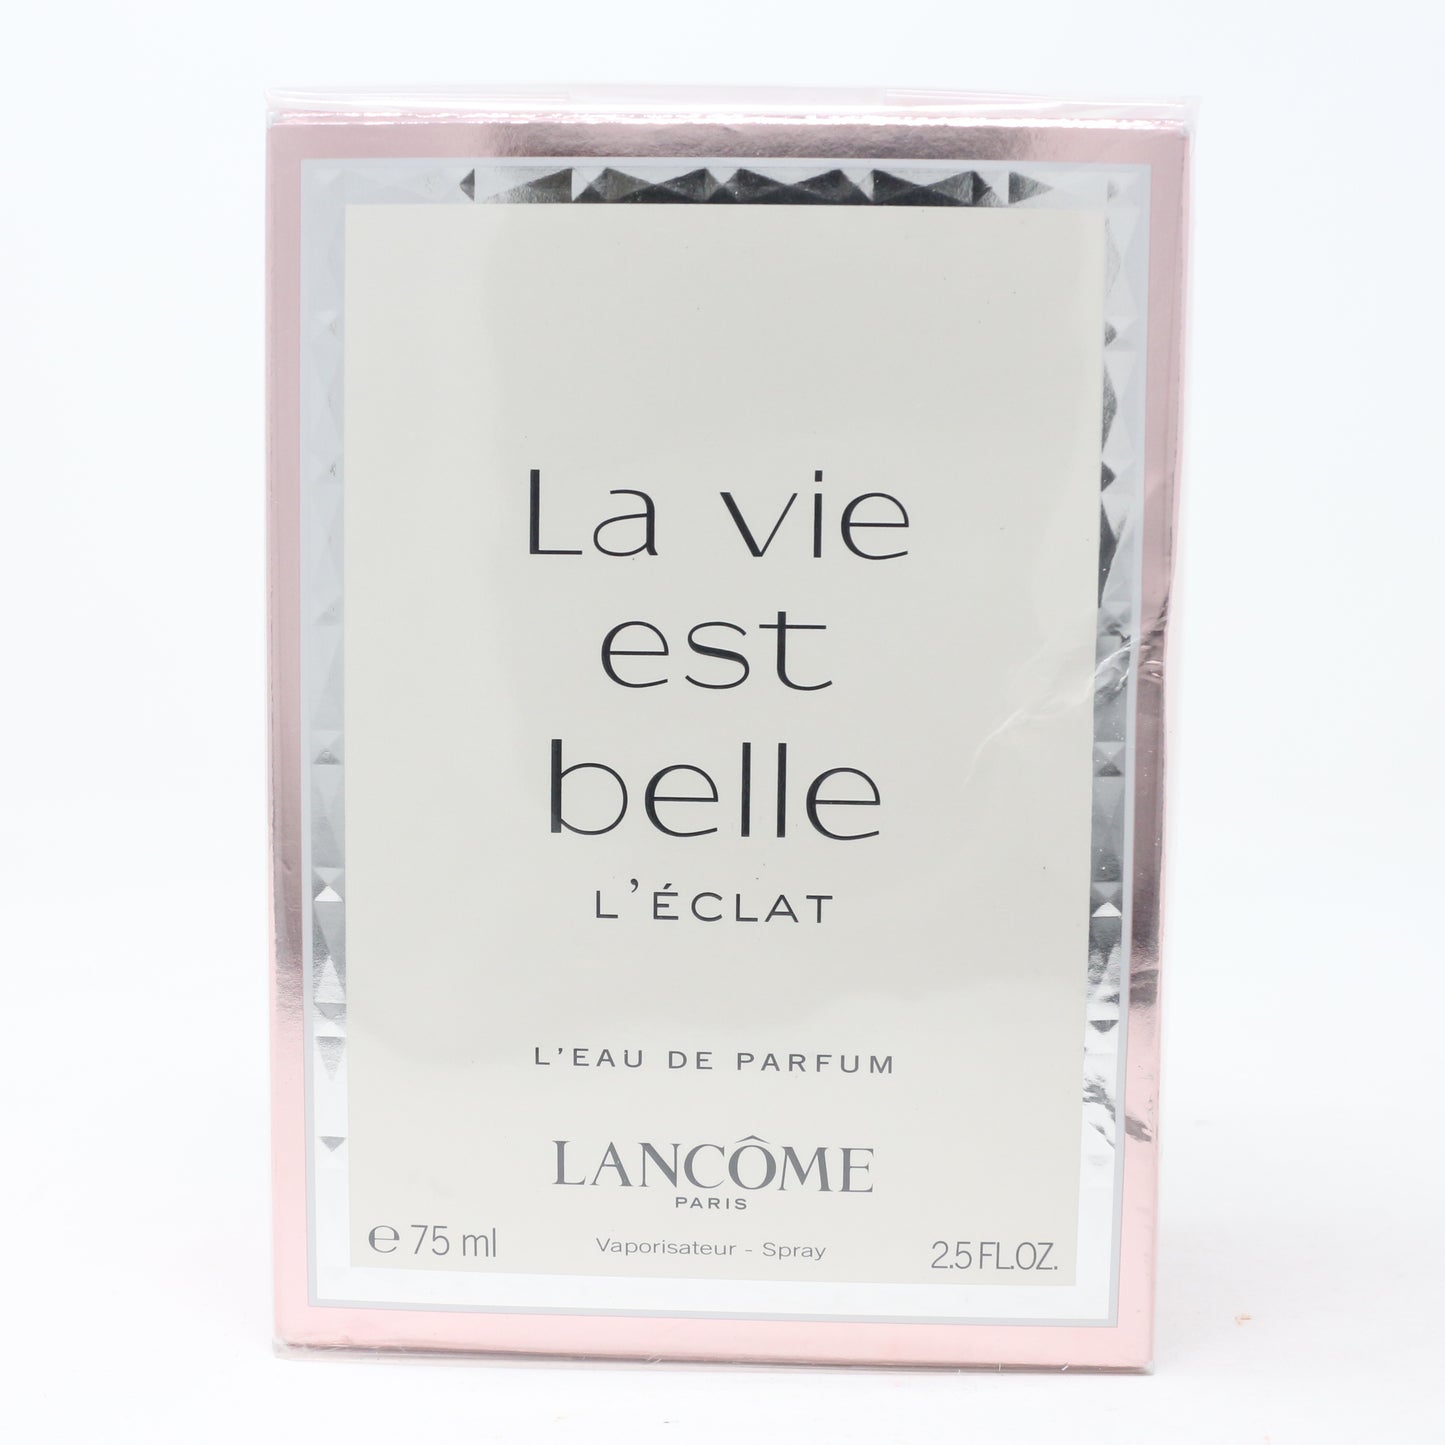 La Vie Est Belle L' Eclat L' Eau De Parfum 75 ml